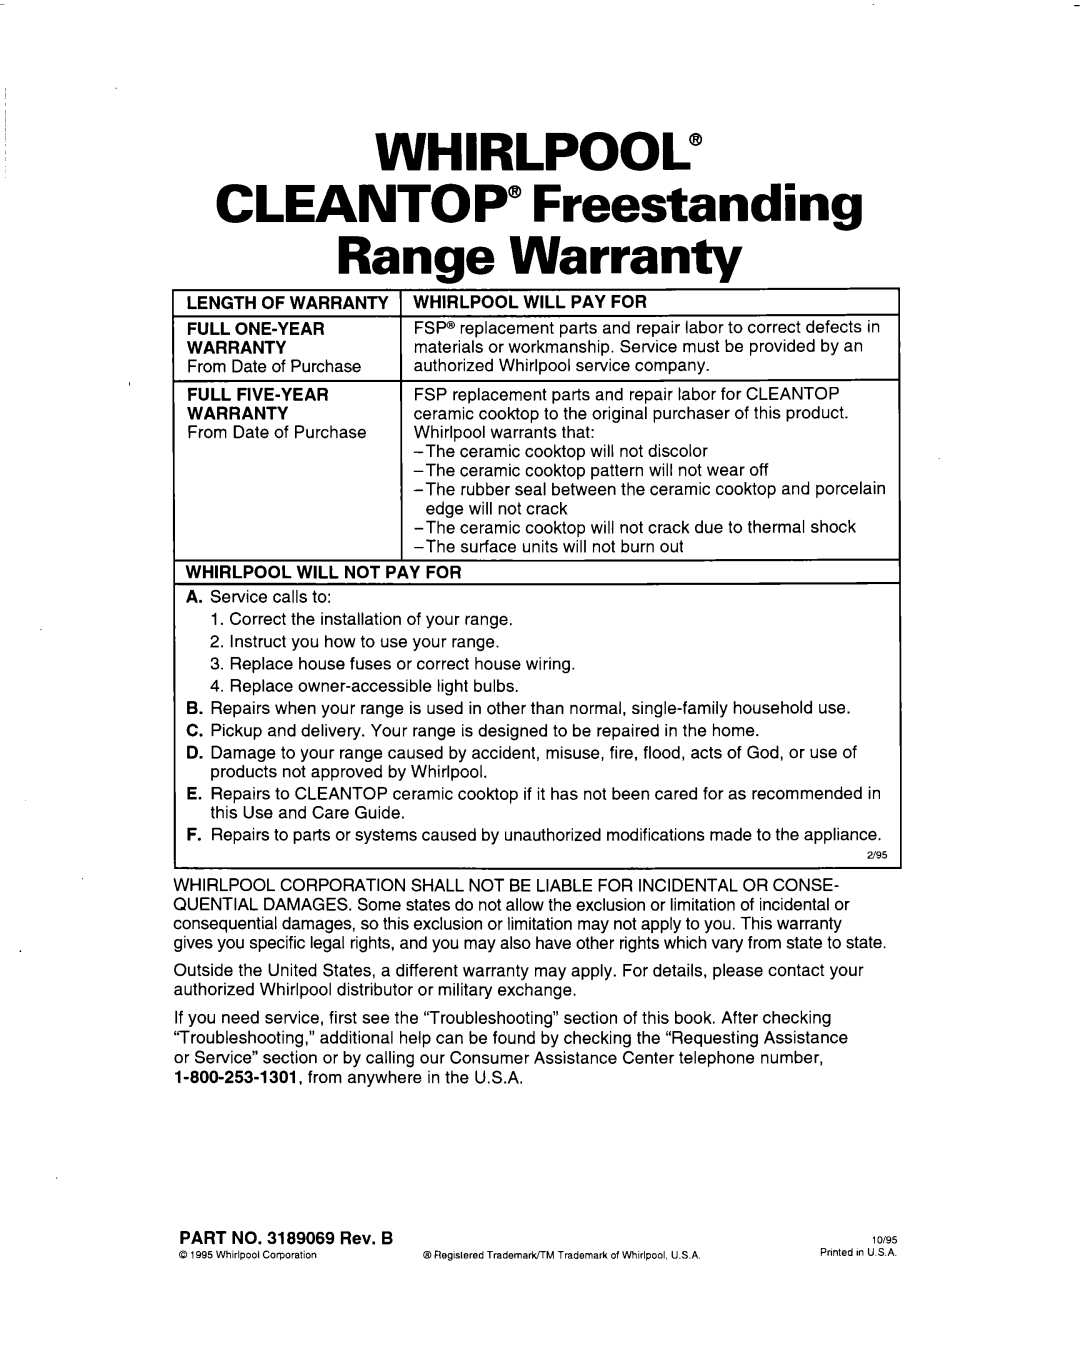 Whirlpool RF314BBD manual WHIRLPOOL@ CLEANTOP” Freestanding Range Warranty 